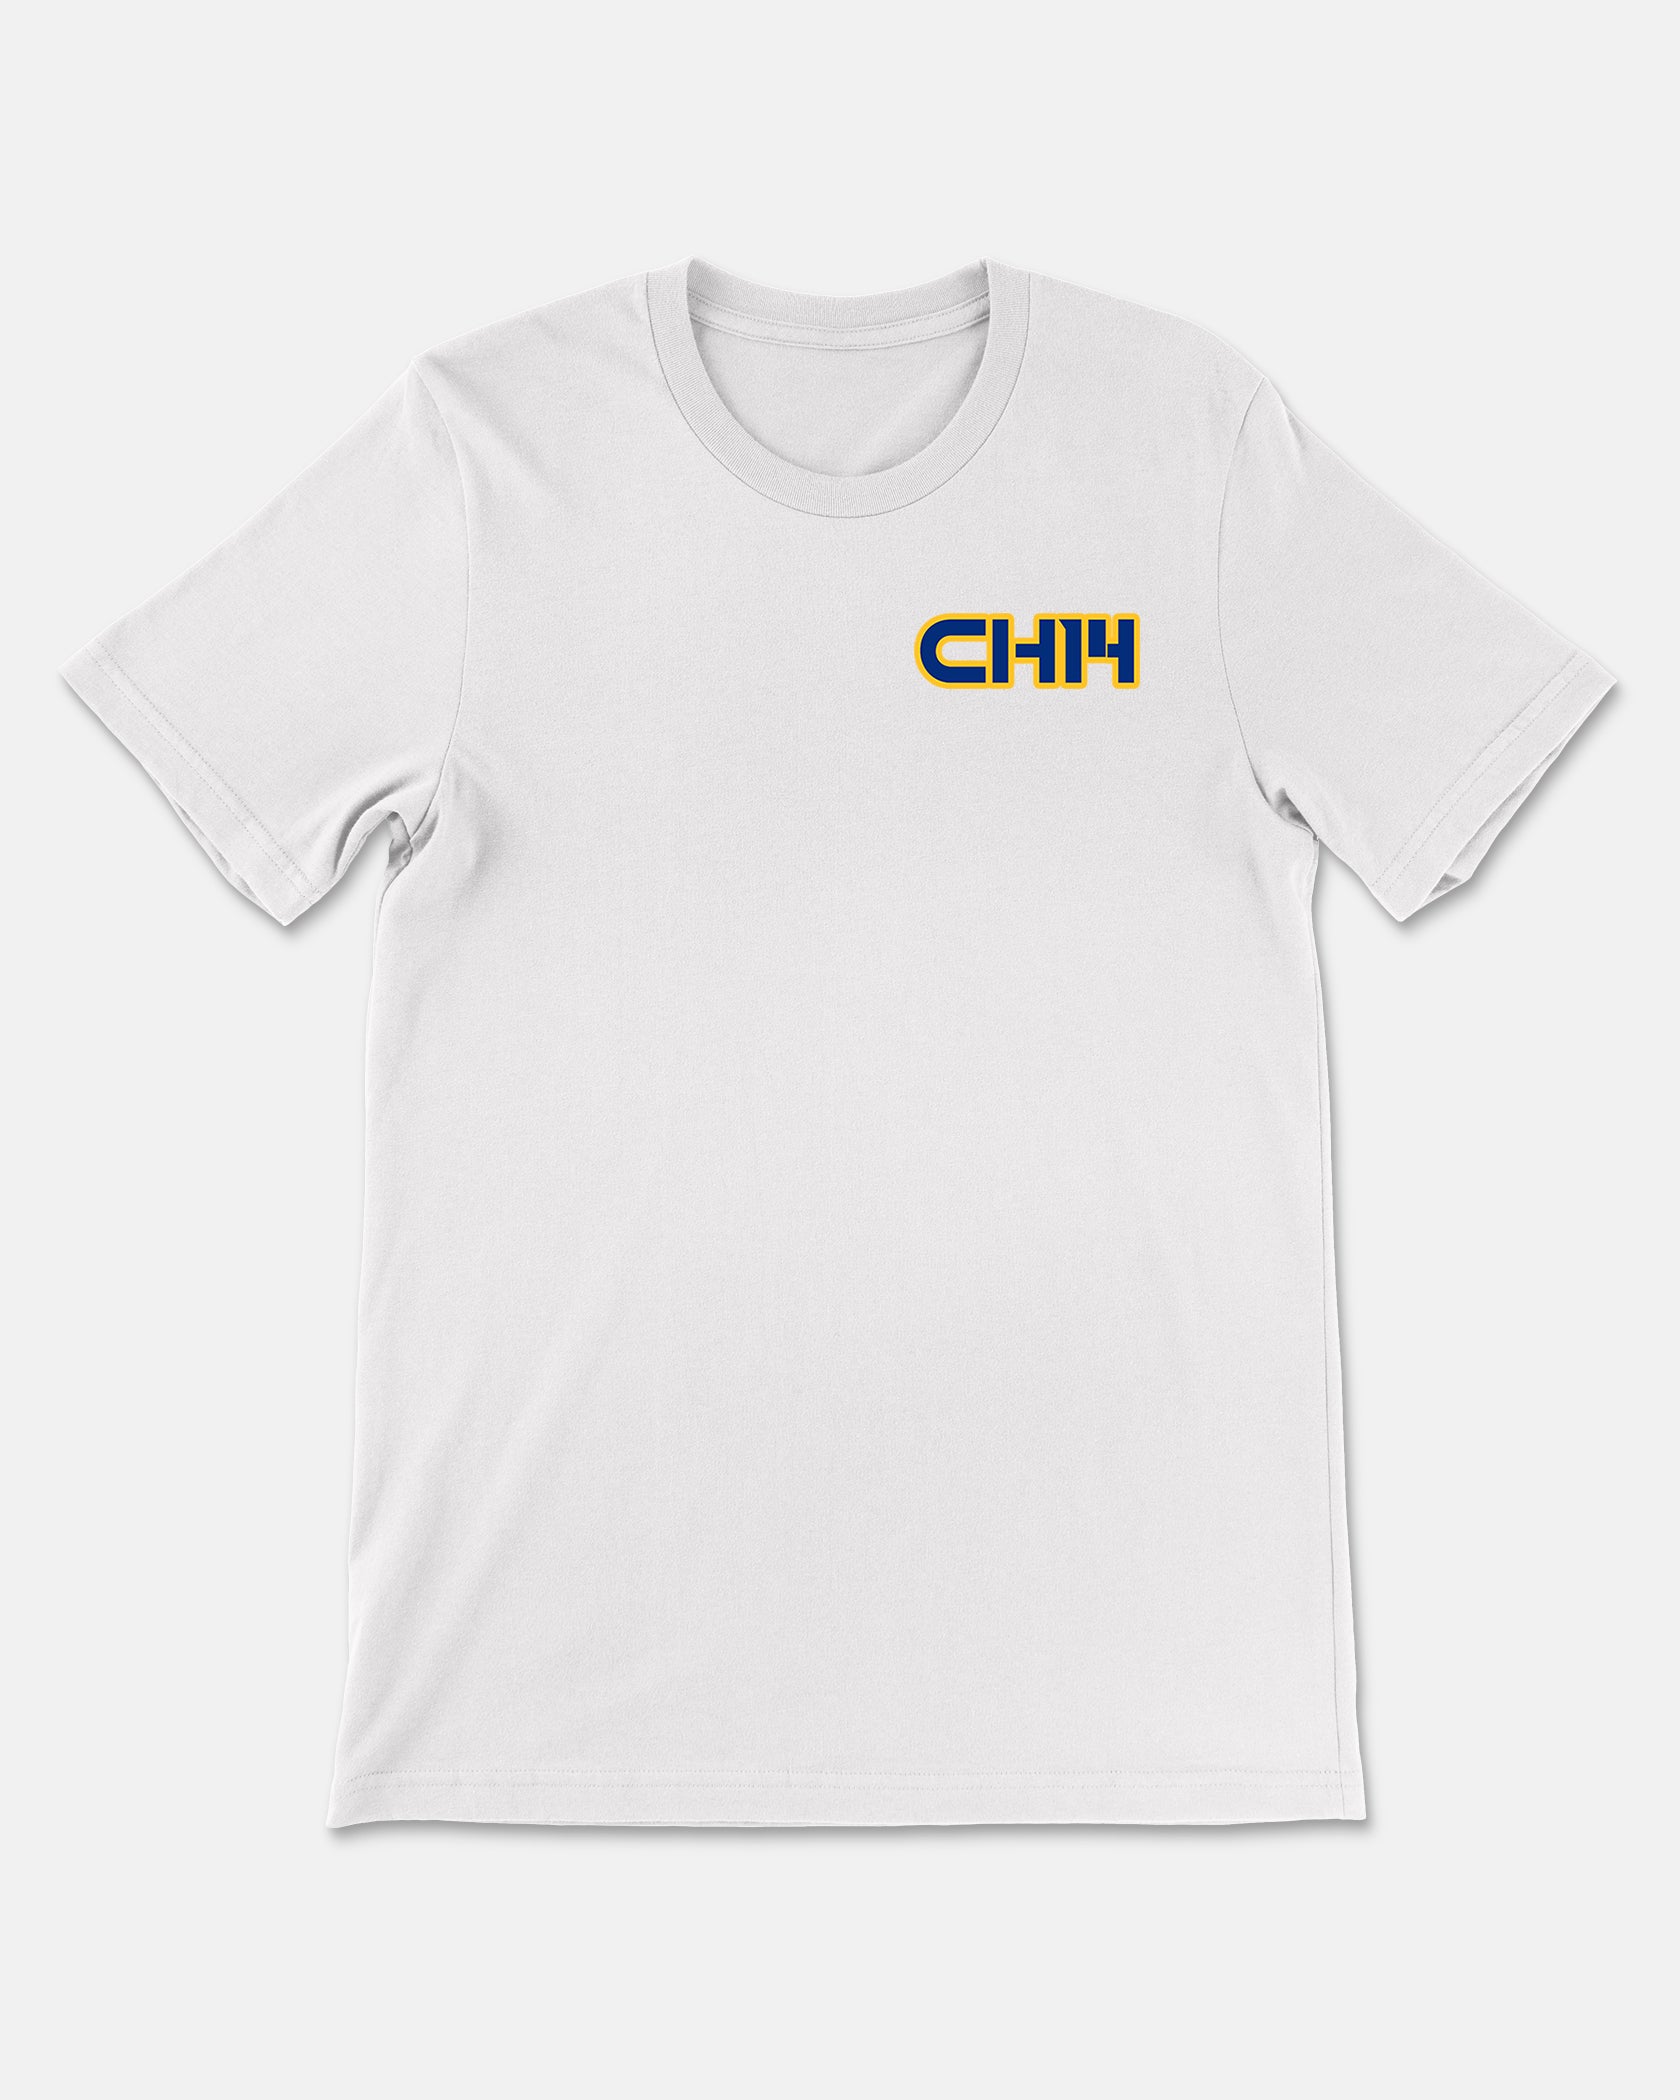 Chris Hope Shirt 001